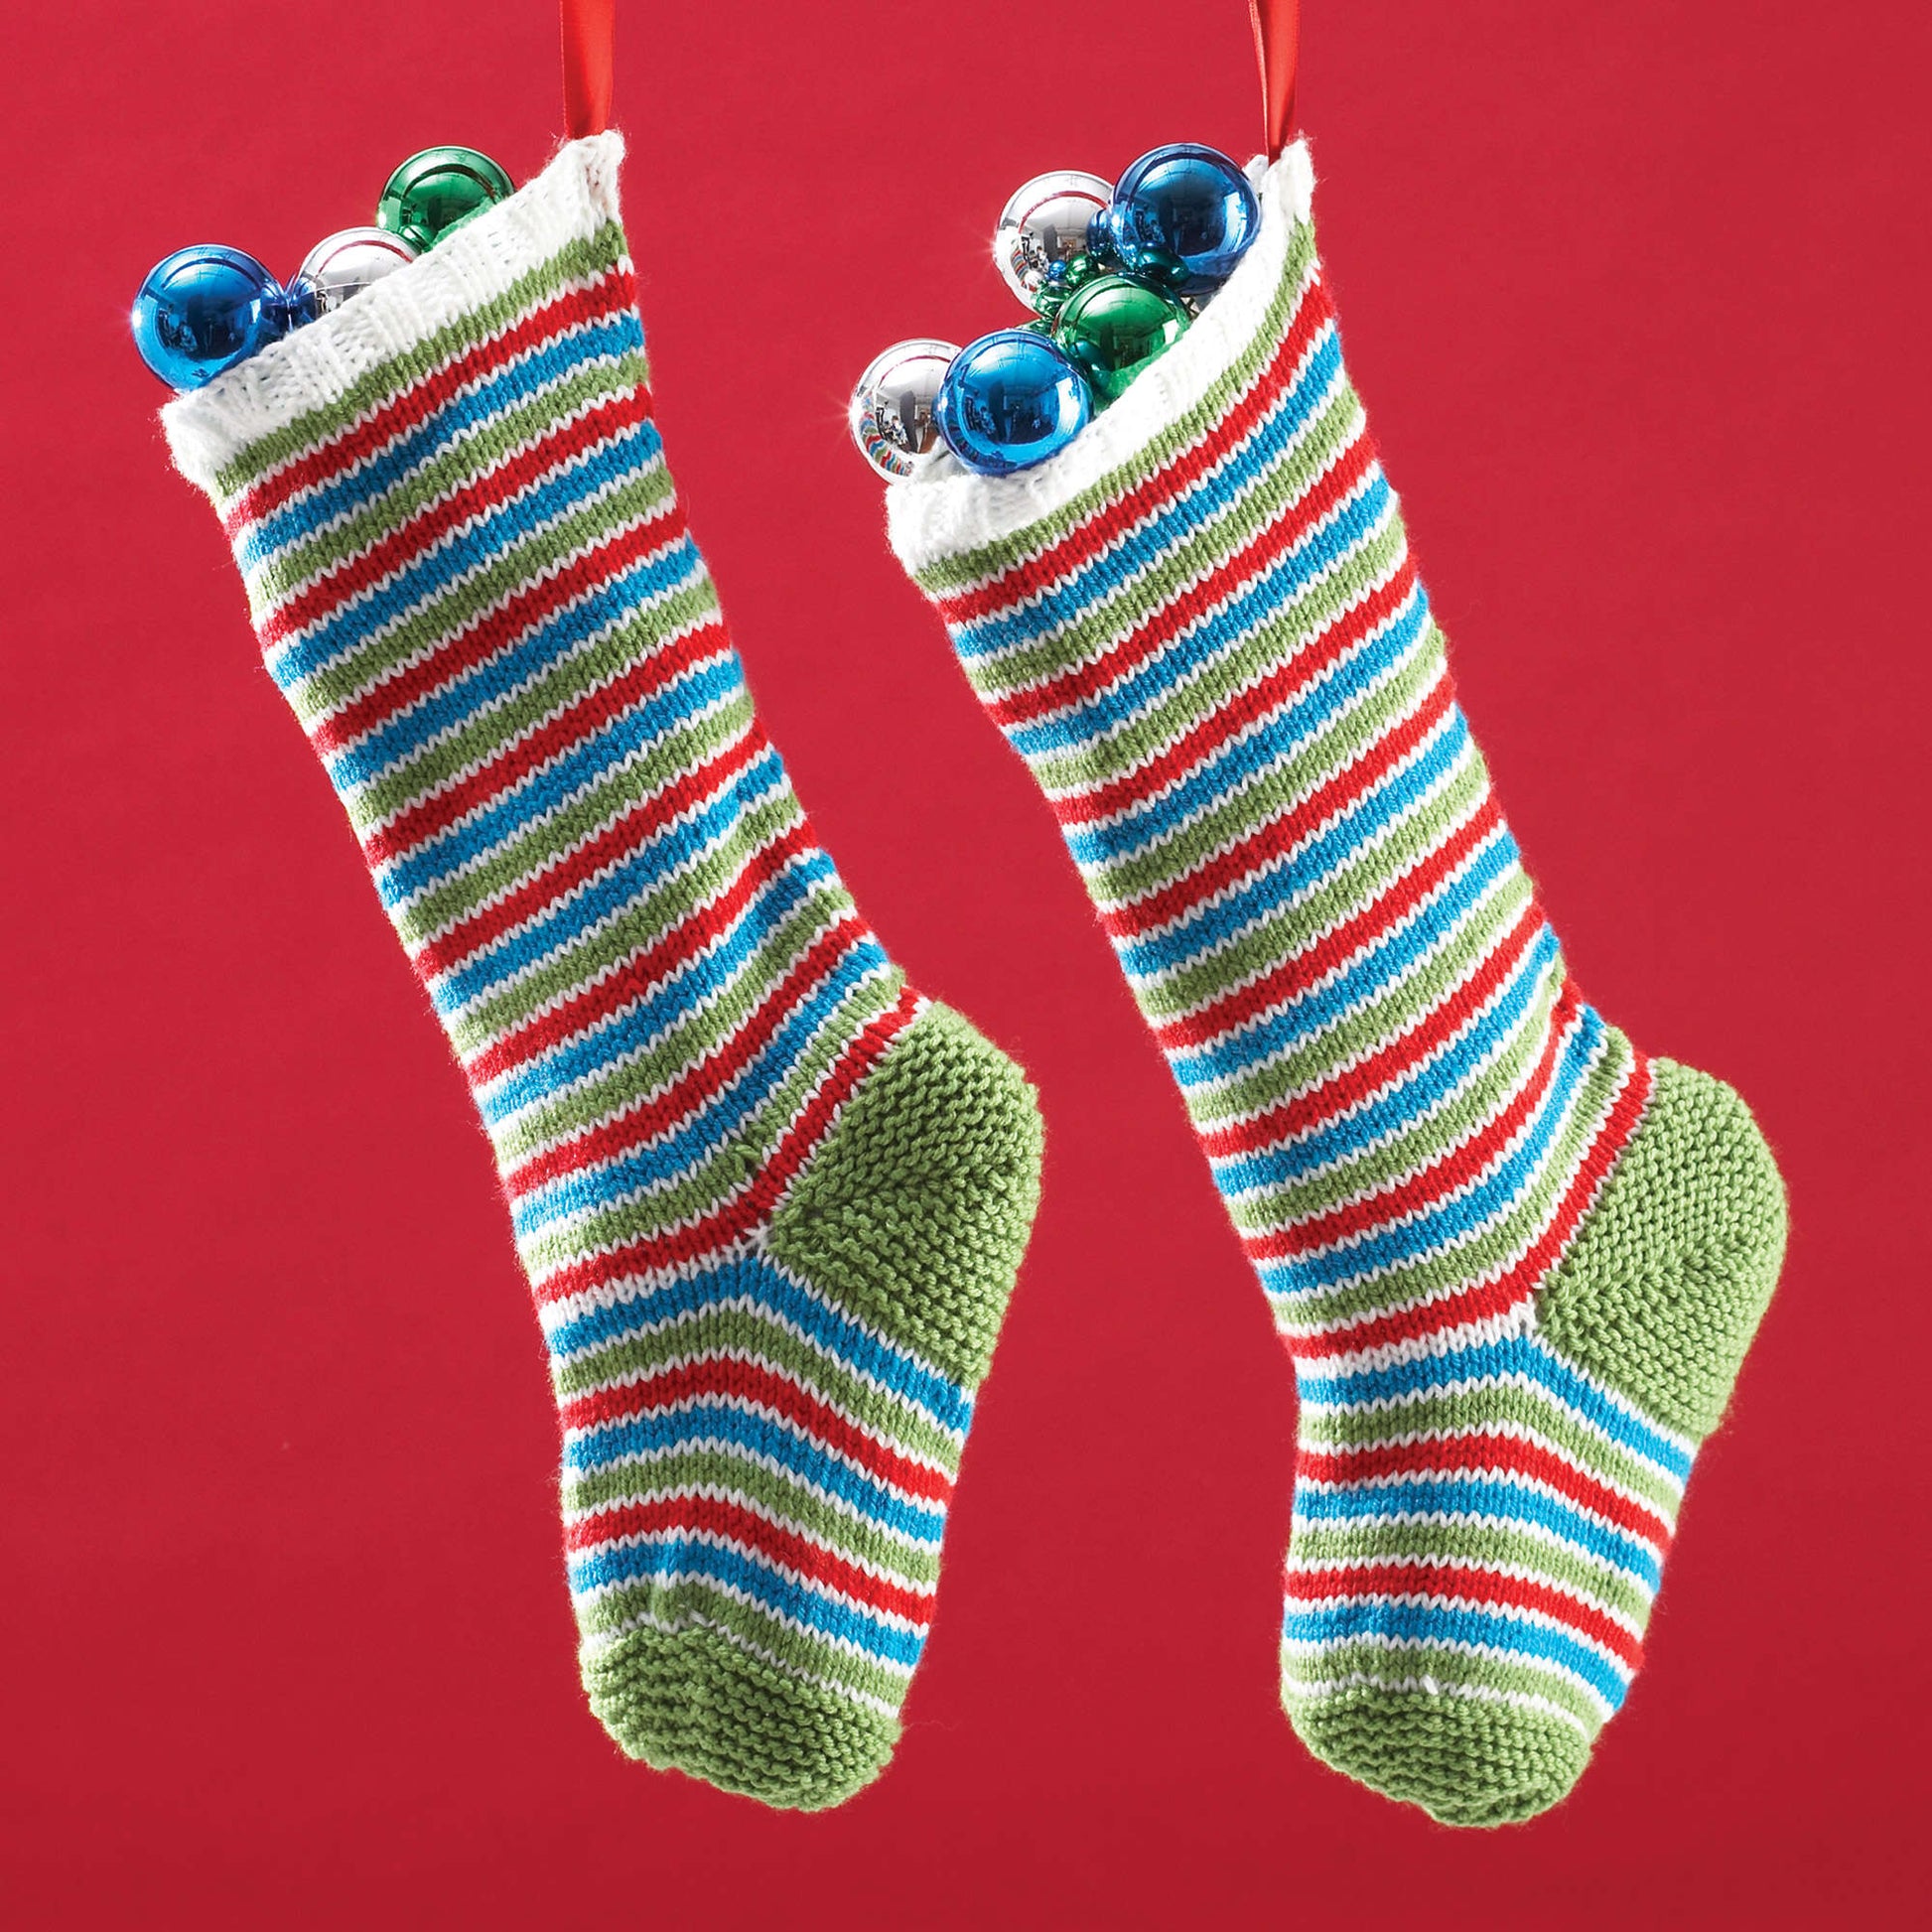 Bernat Jolly Striped Stockings Knit Holiday made in Bernat Super Value yarn